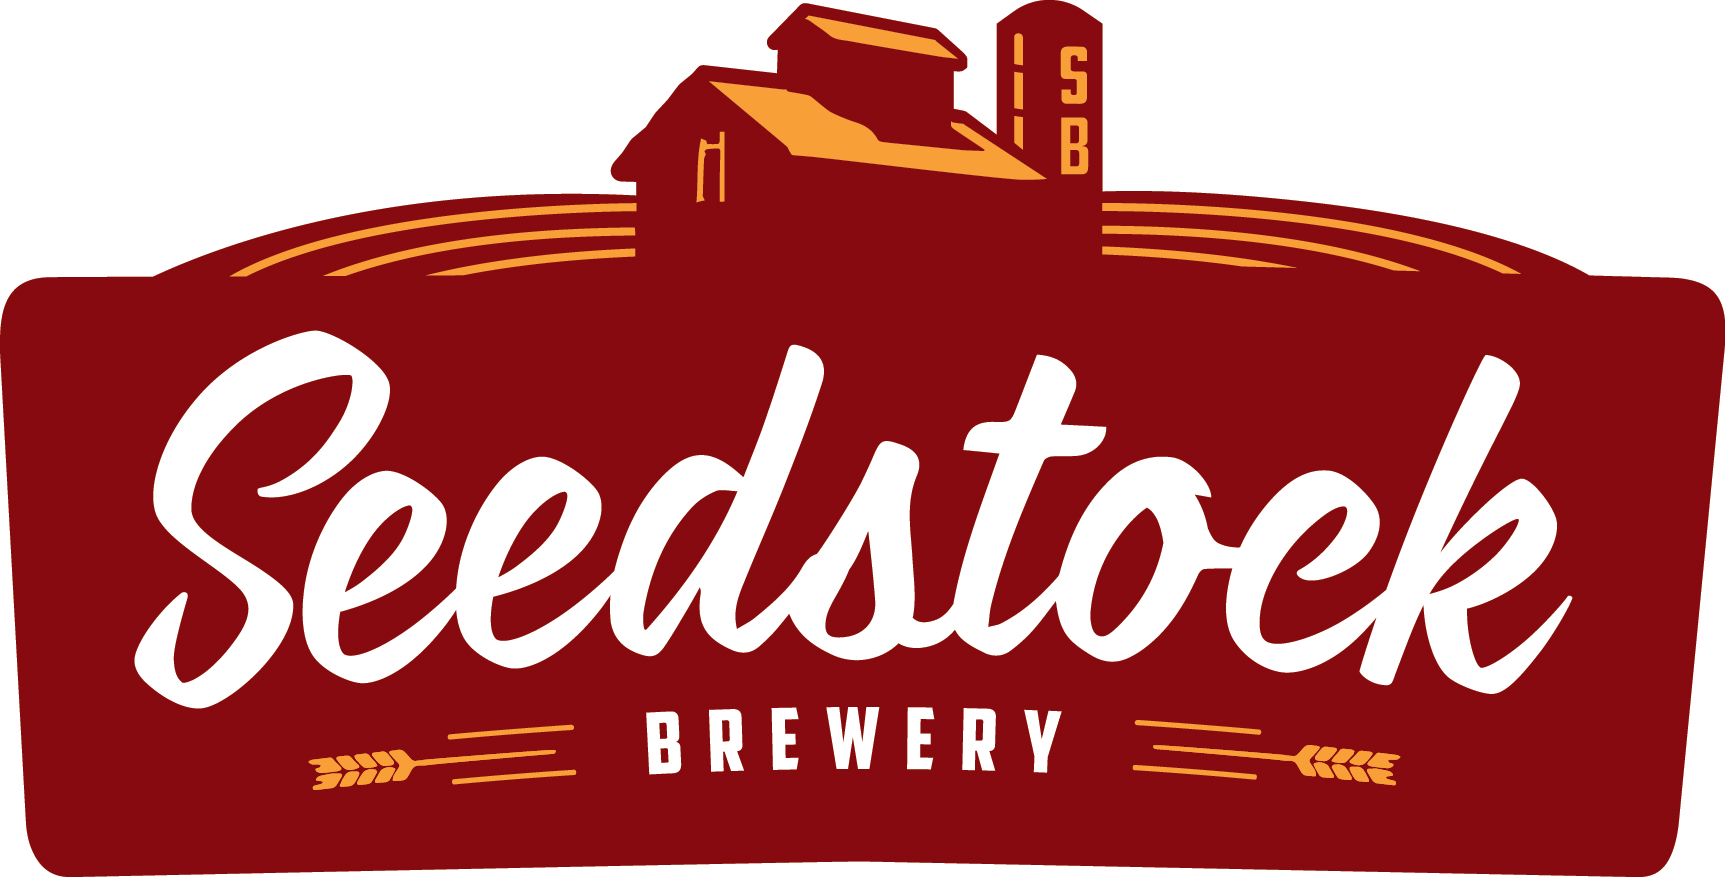 Seedstock Brewery